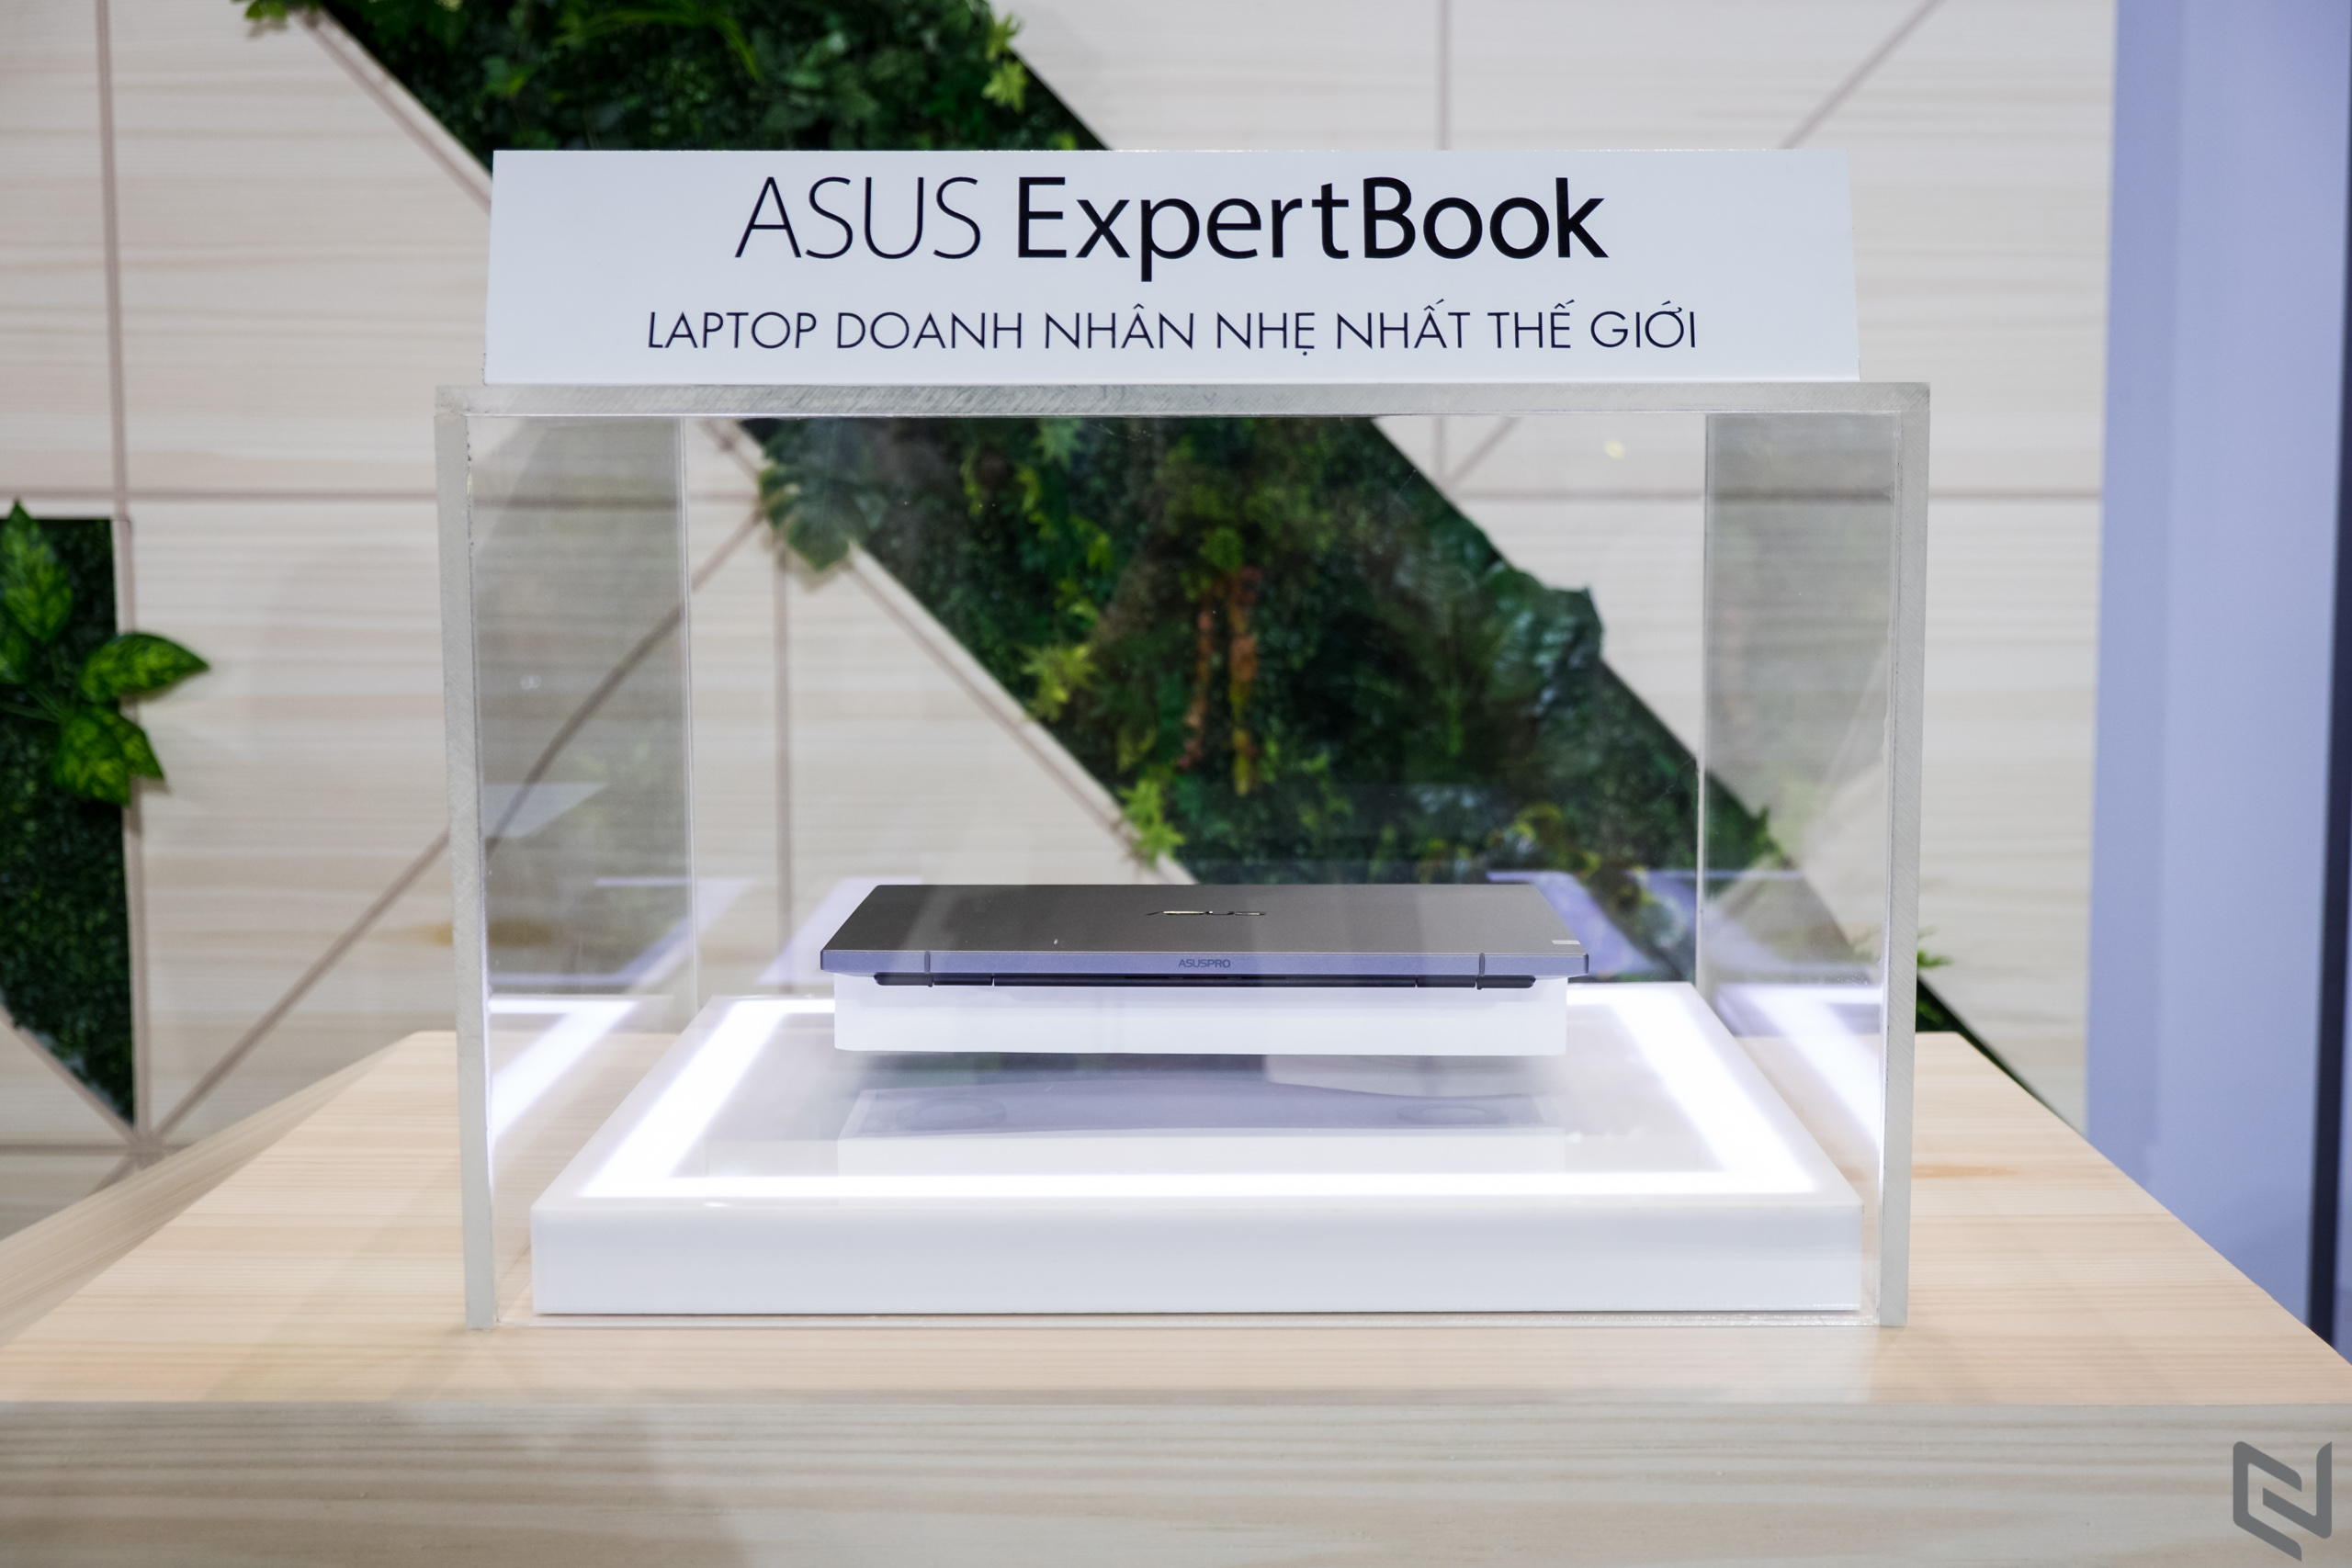 Khai mạc ASUS EXPO 2019: Siêu triển lãm công nghệ kỷ niệm ASUS 30 năm với nhiều thiết bị được trưng bày